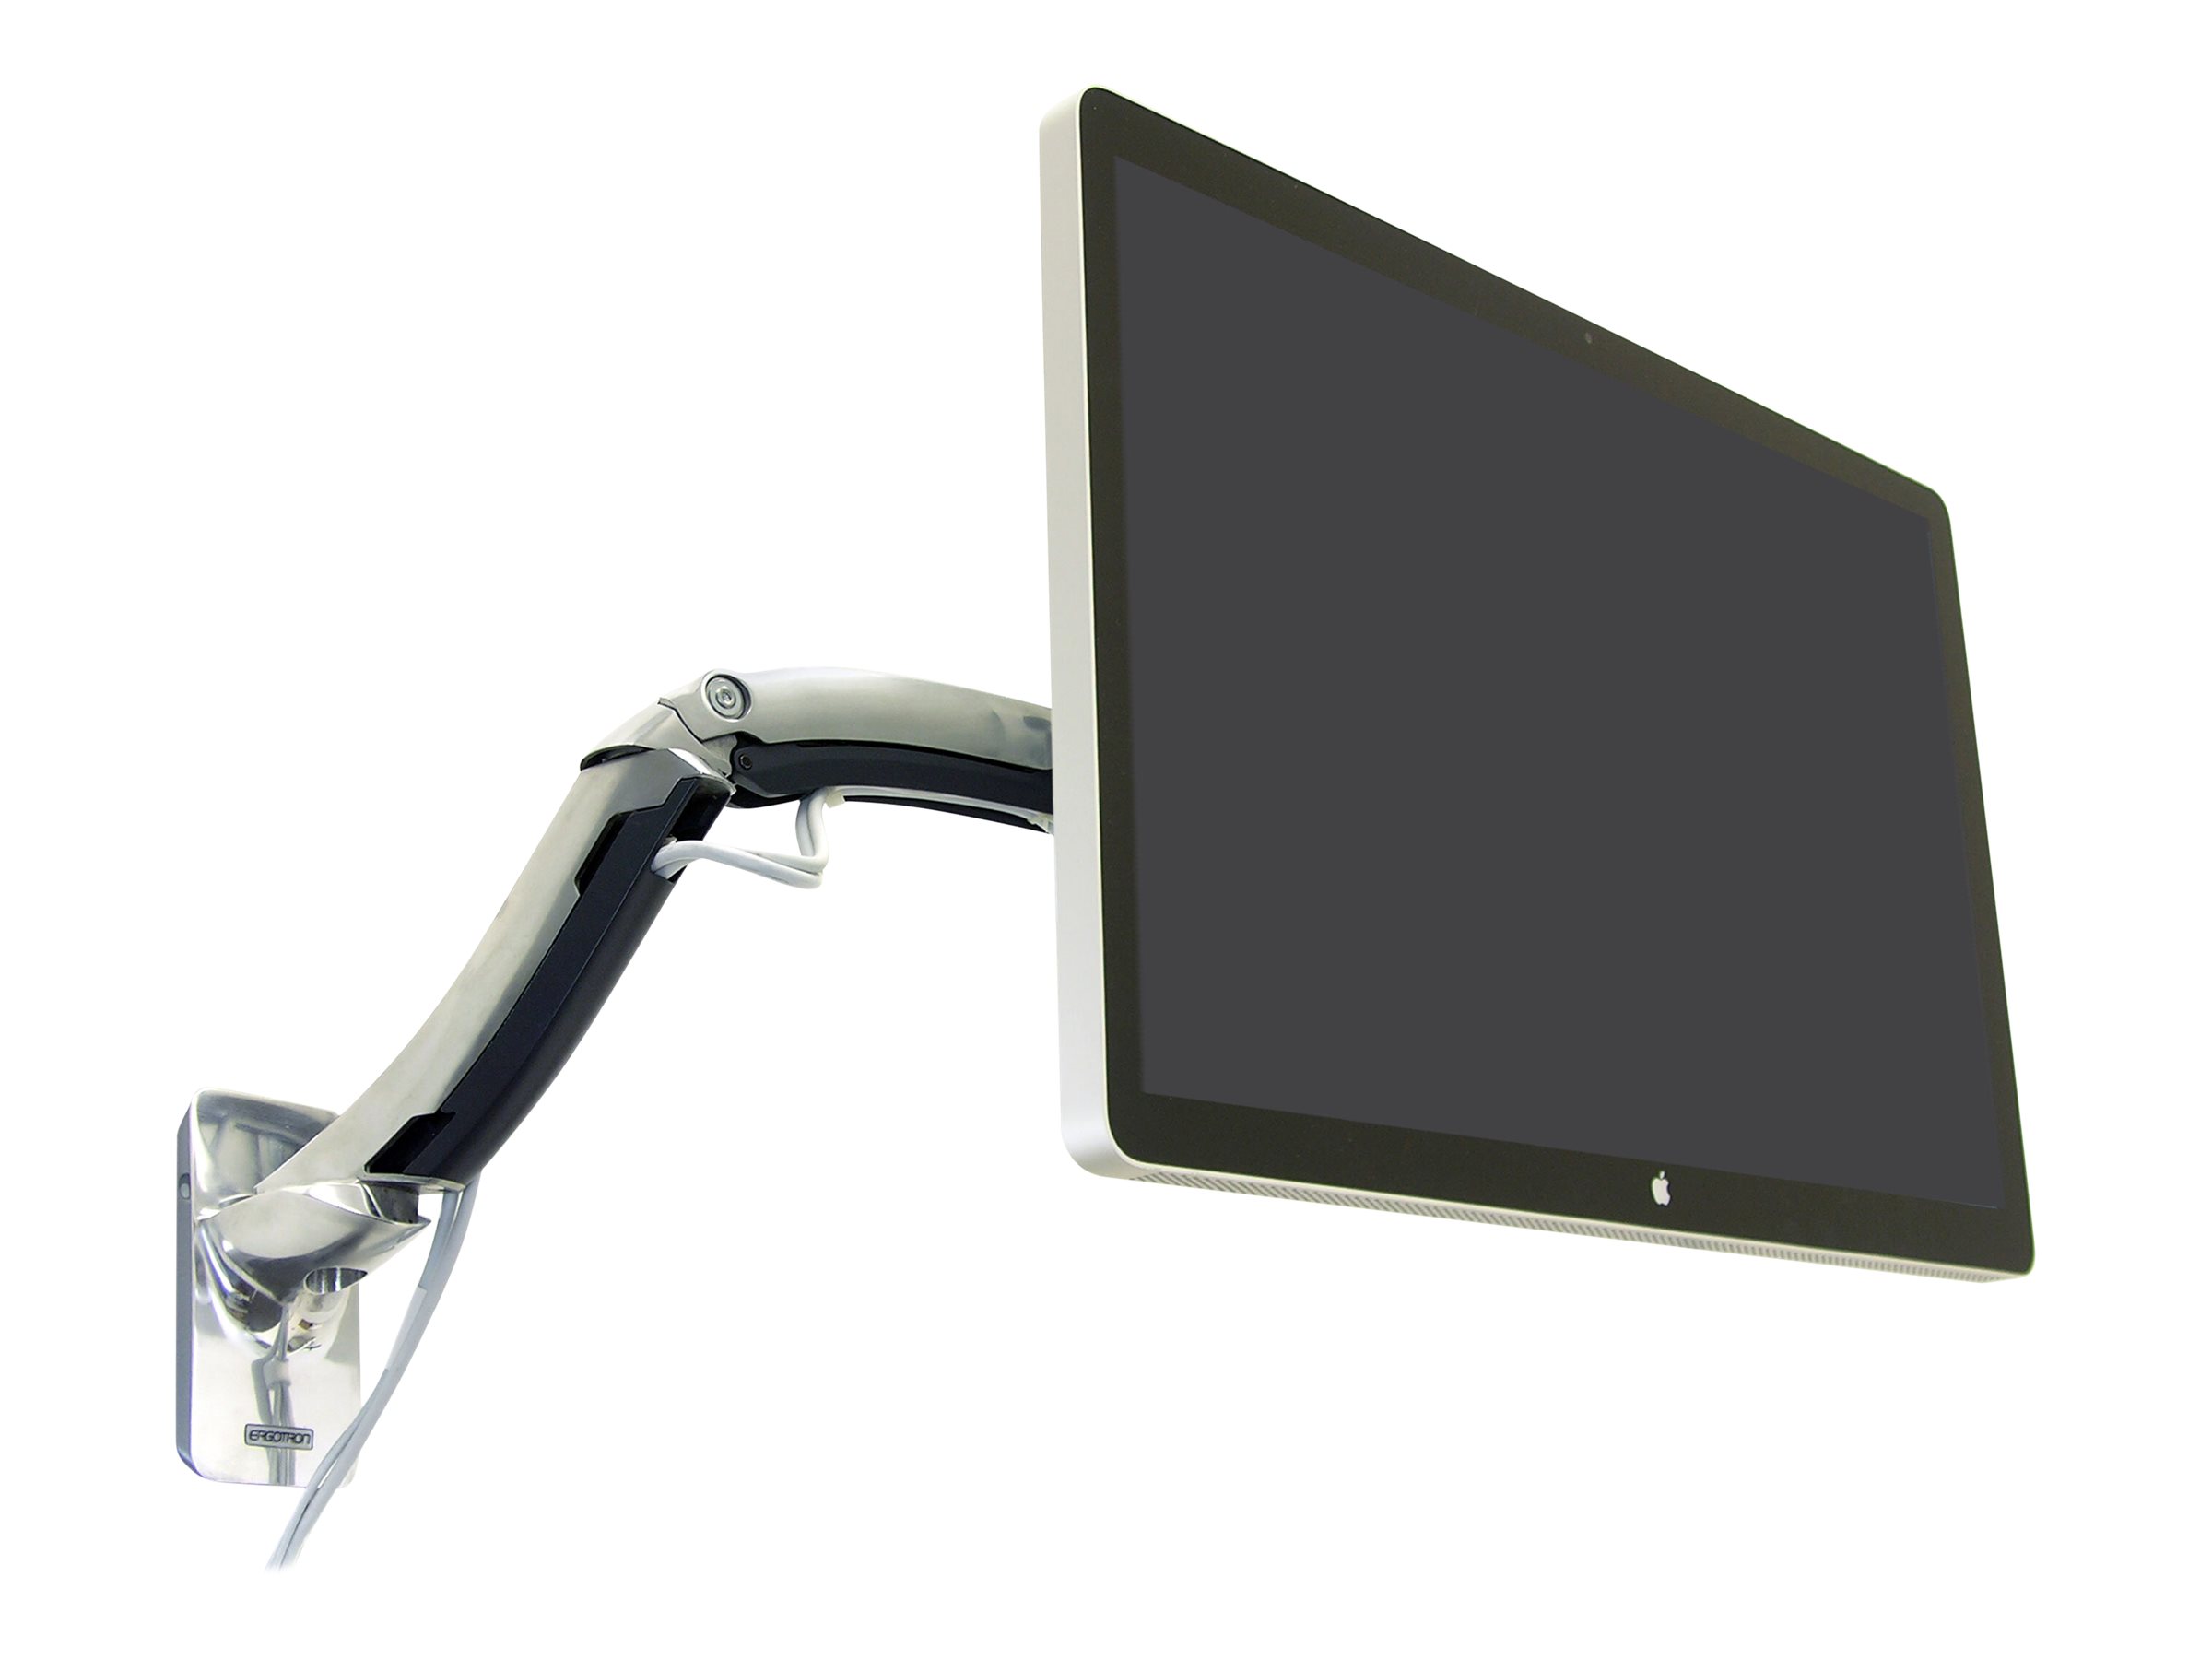 Ergotron MX - Befestigungskit (Gelenkarm, Aufbauplatte, VESA-Halterung) - Patentierte Constant Force Technologie - für LCD-Display - Polished Aluminum - Bildschirmgröße: bis zu 106,7 cm (bis zu 42 Zoll)